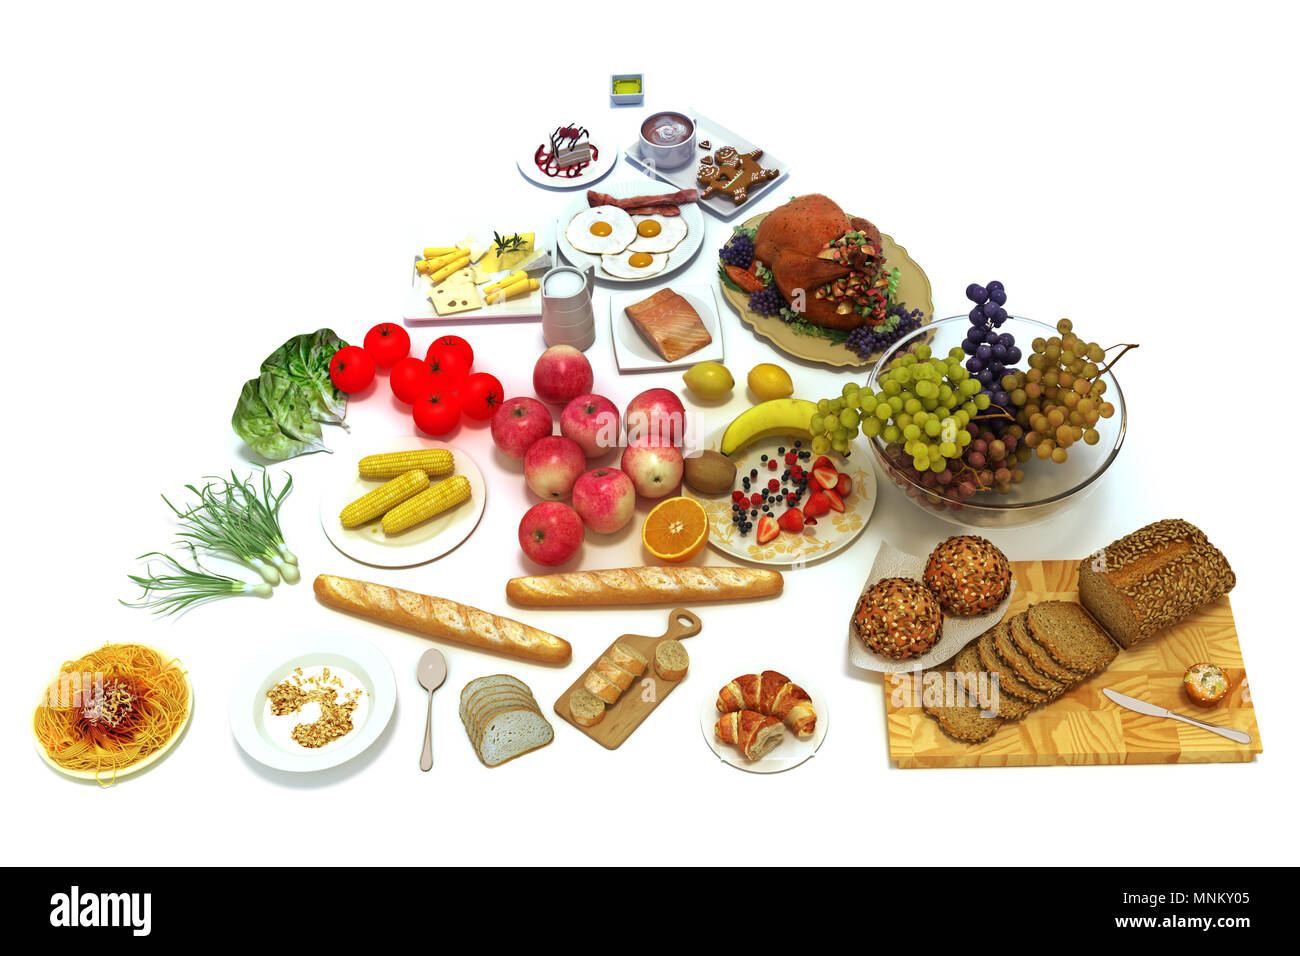 Pyramide alimentaire Concept d'une alimentation saine des groupes isolé sur fond blanc, 300 D.P.I, différentes portions de nourriture saine, de l'équilibre avec les groupes alimentaires Banque D'Images